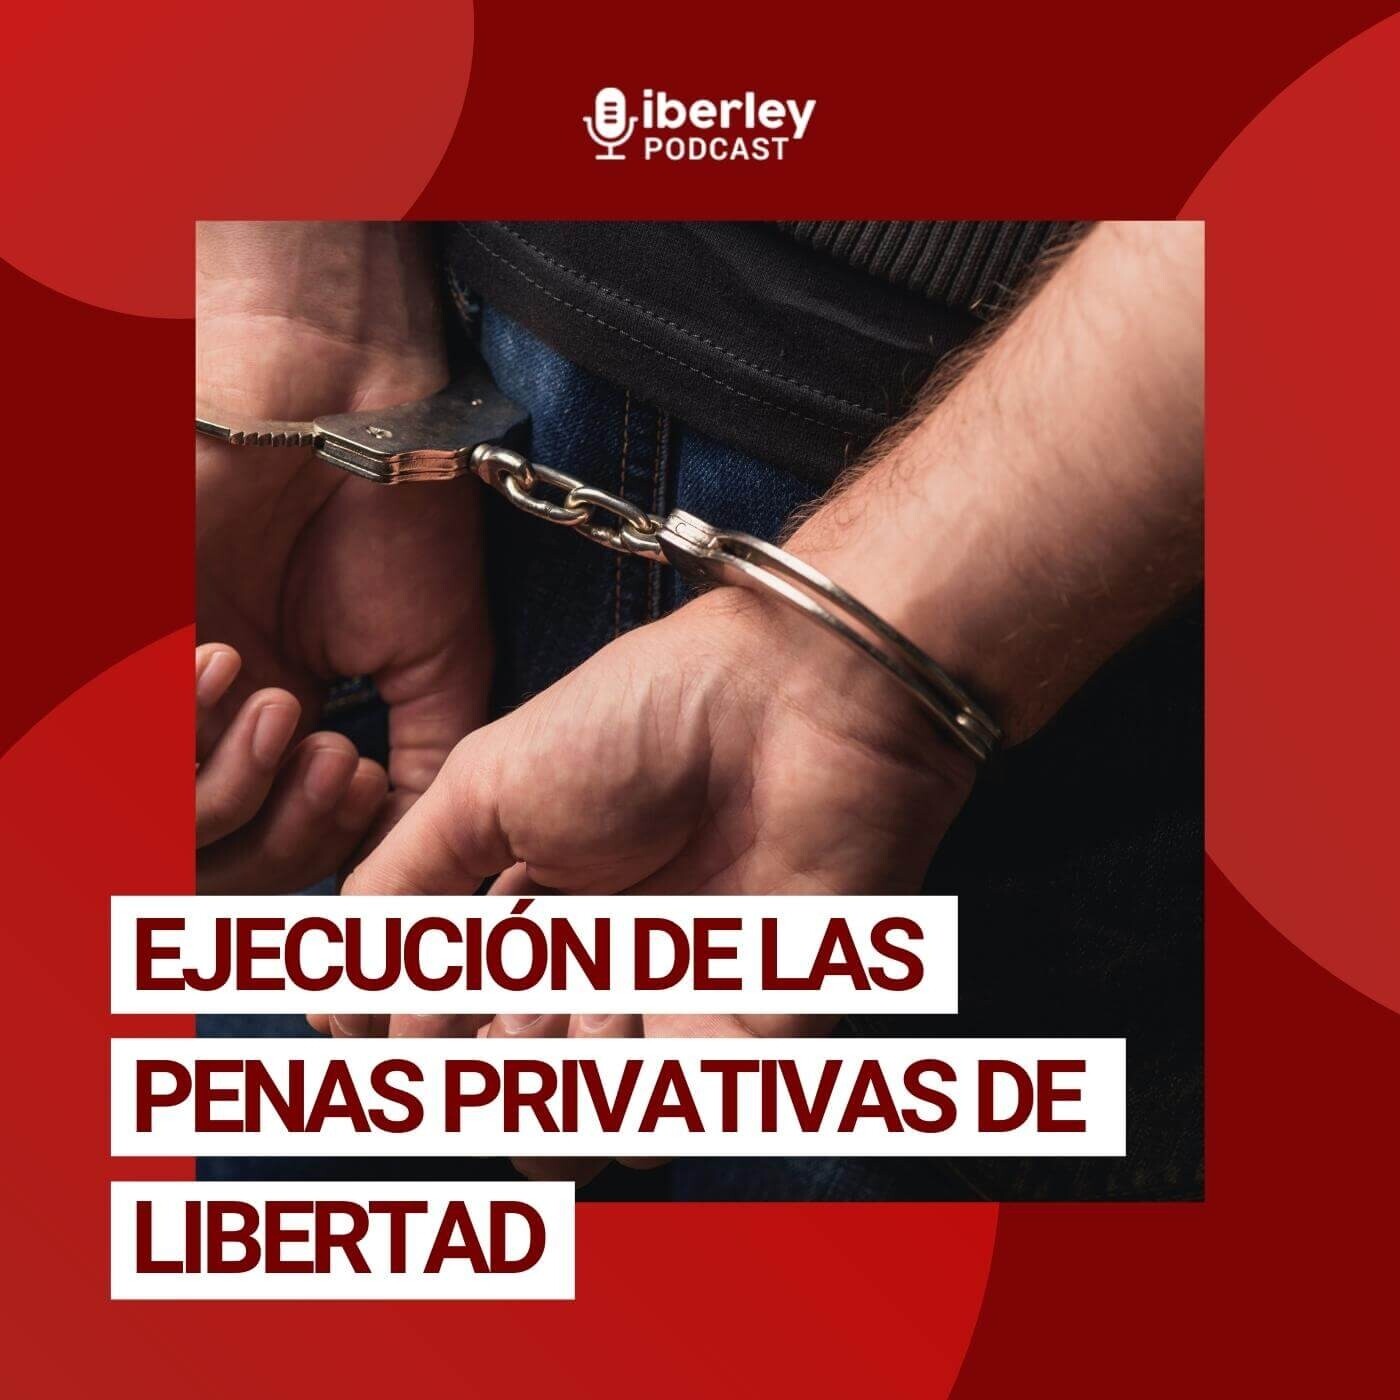 #Webinar | Ejecución de las penas privativas de libertad